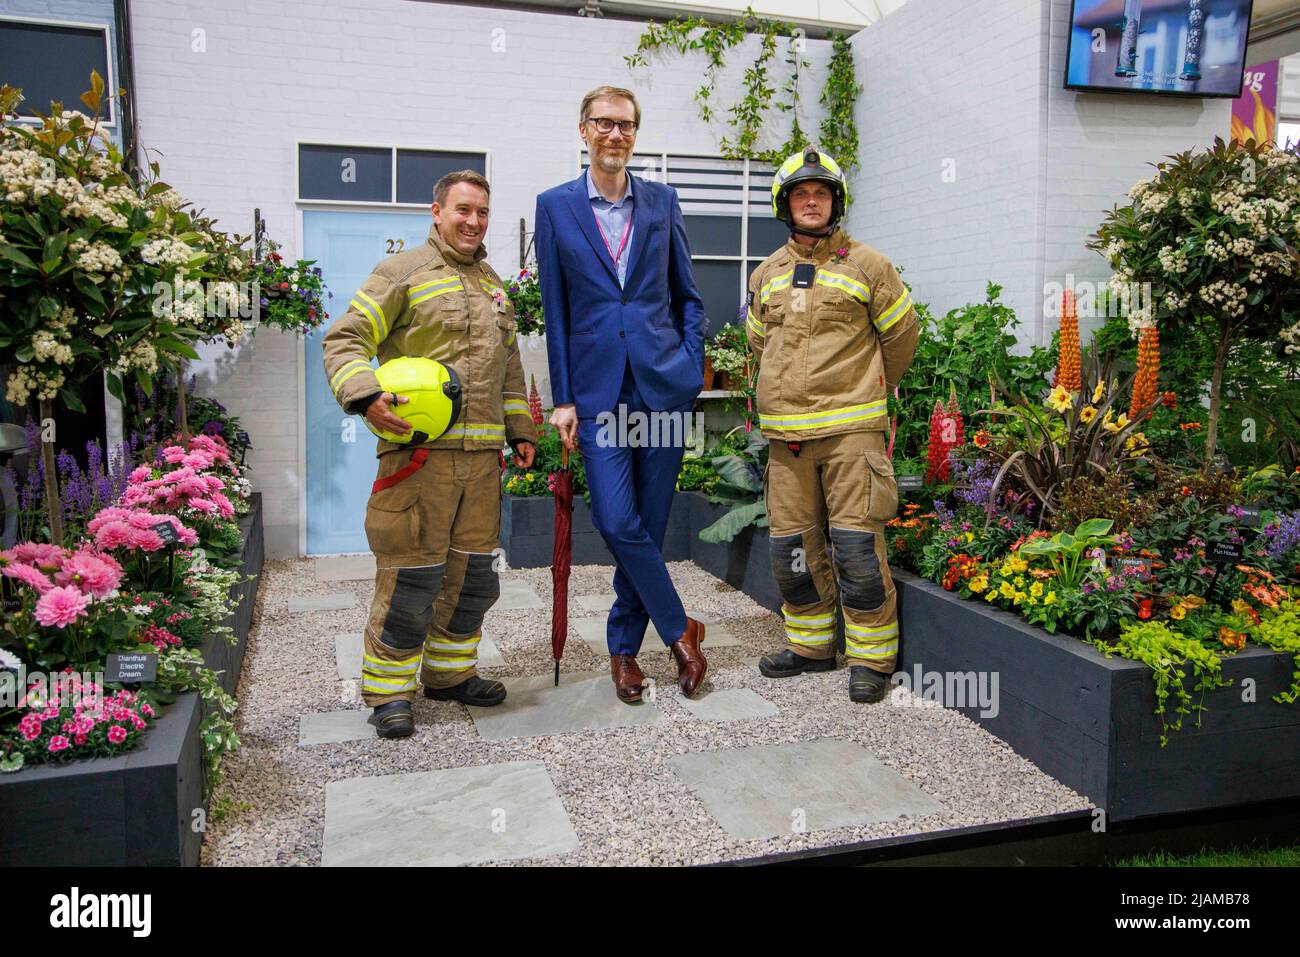 Stephen Merchant, acteur, comédien, réalisateur, présentateur et écrivain, Au RHS Chelsea Flower Show avec deux pompiers. Banque D'Images